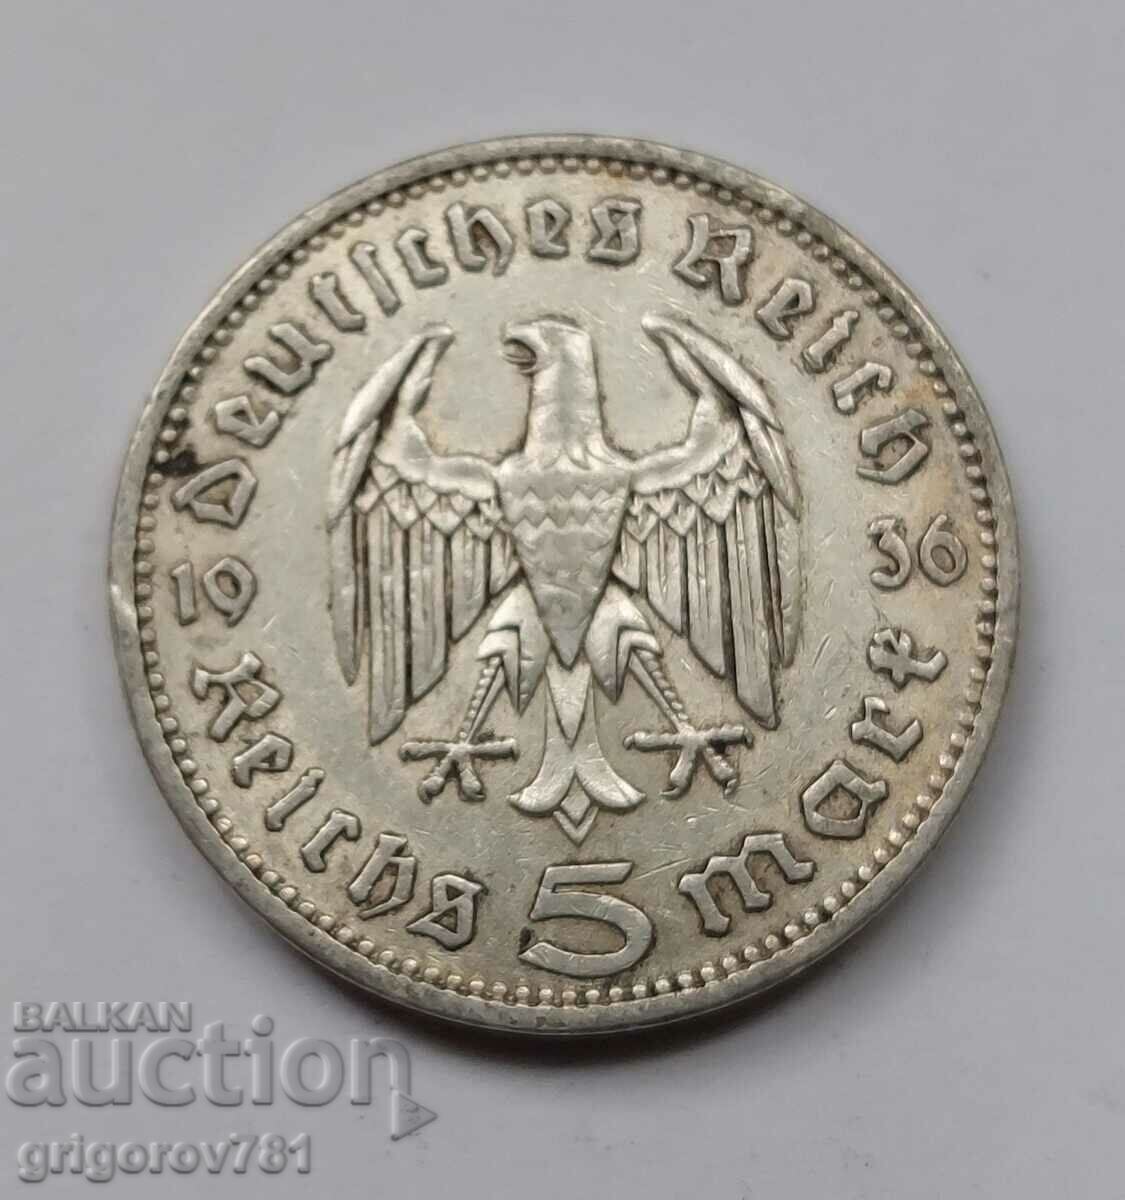 5 Mark Silver Γερμανία 1936 A III Reich Silver Coin #45